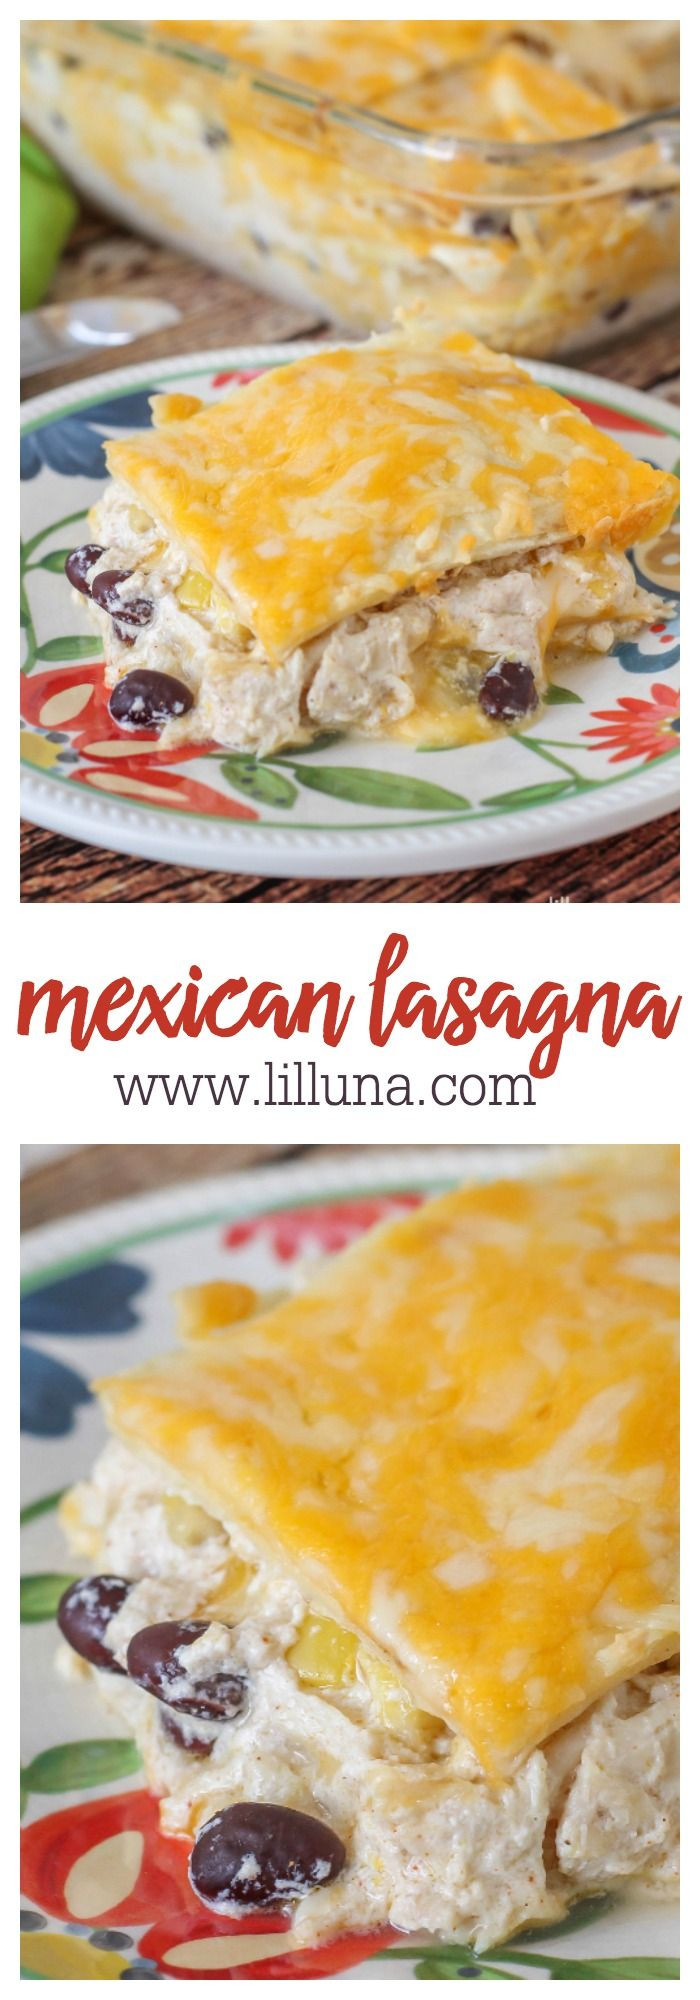 Mexican Chicken Lasagna With Tortillas
 Mexican Lasagna Recipe